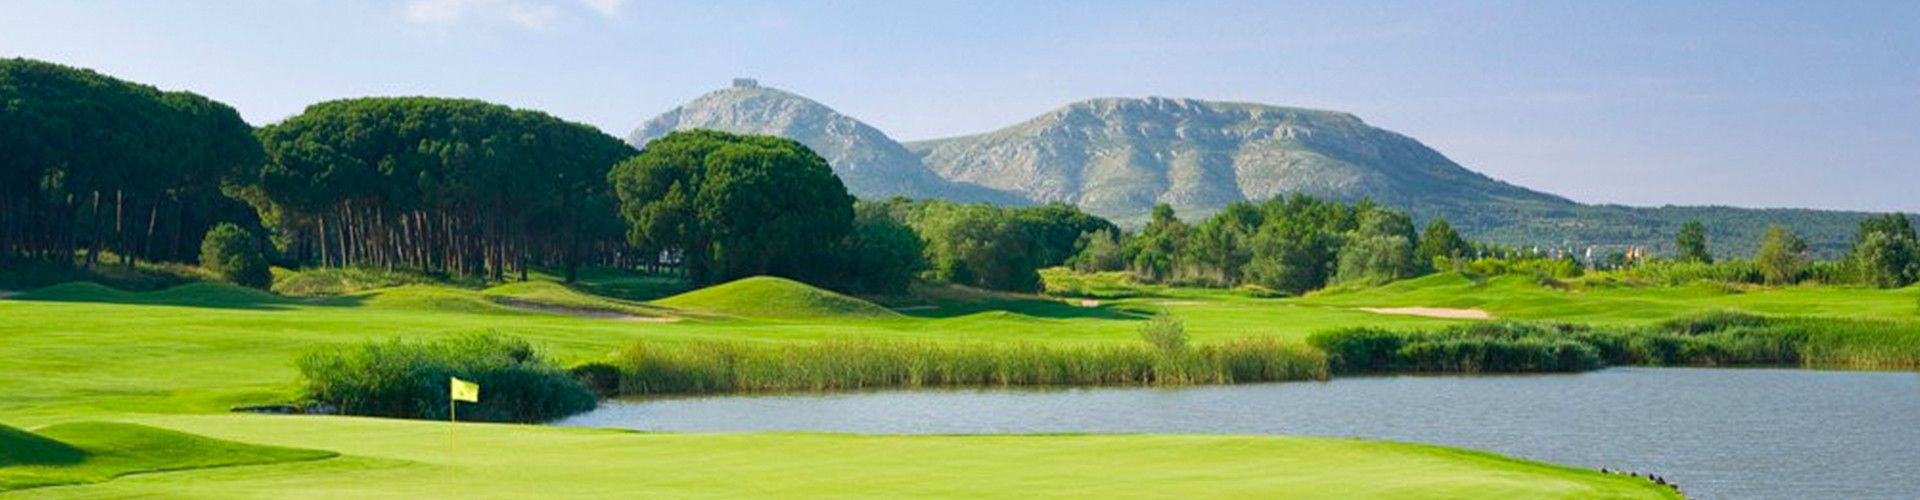 Empordà Golf Resort